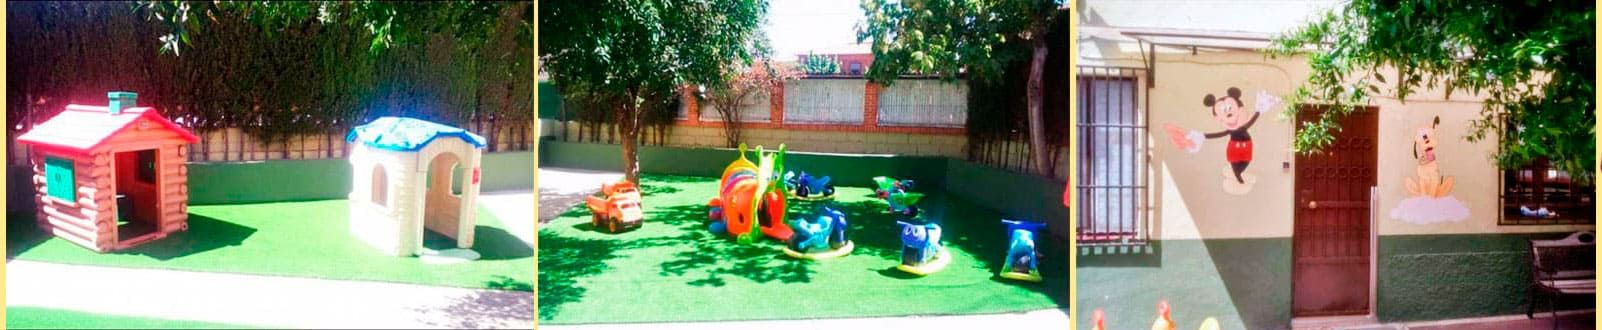 Escuela Infantil Colorines interior jardín infantil